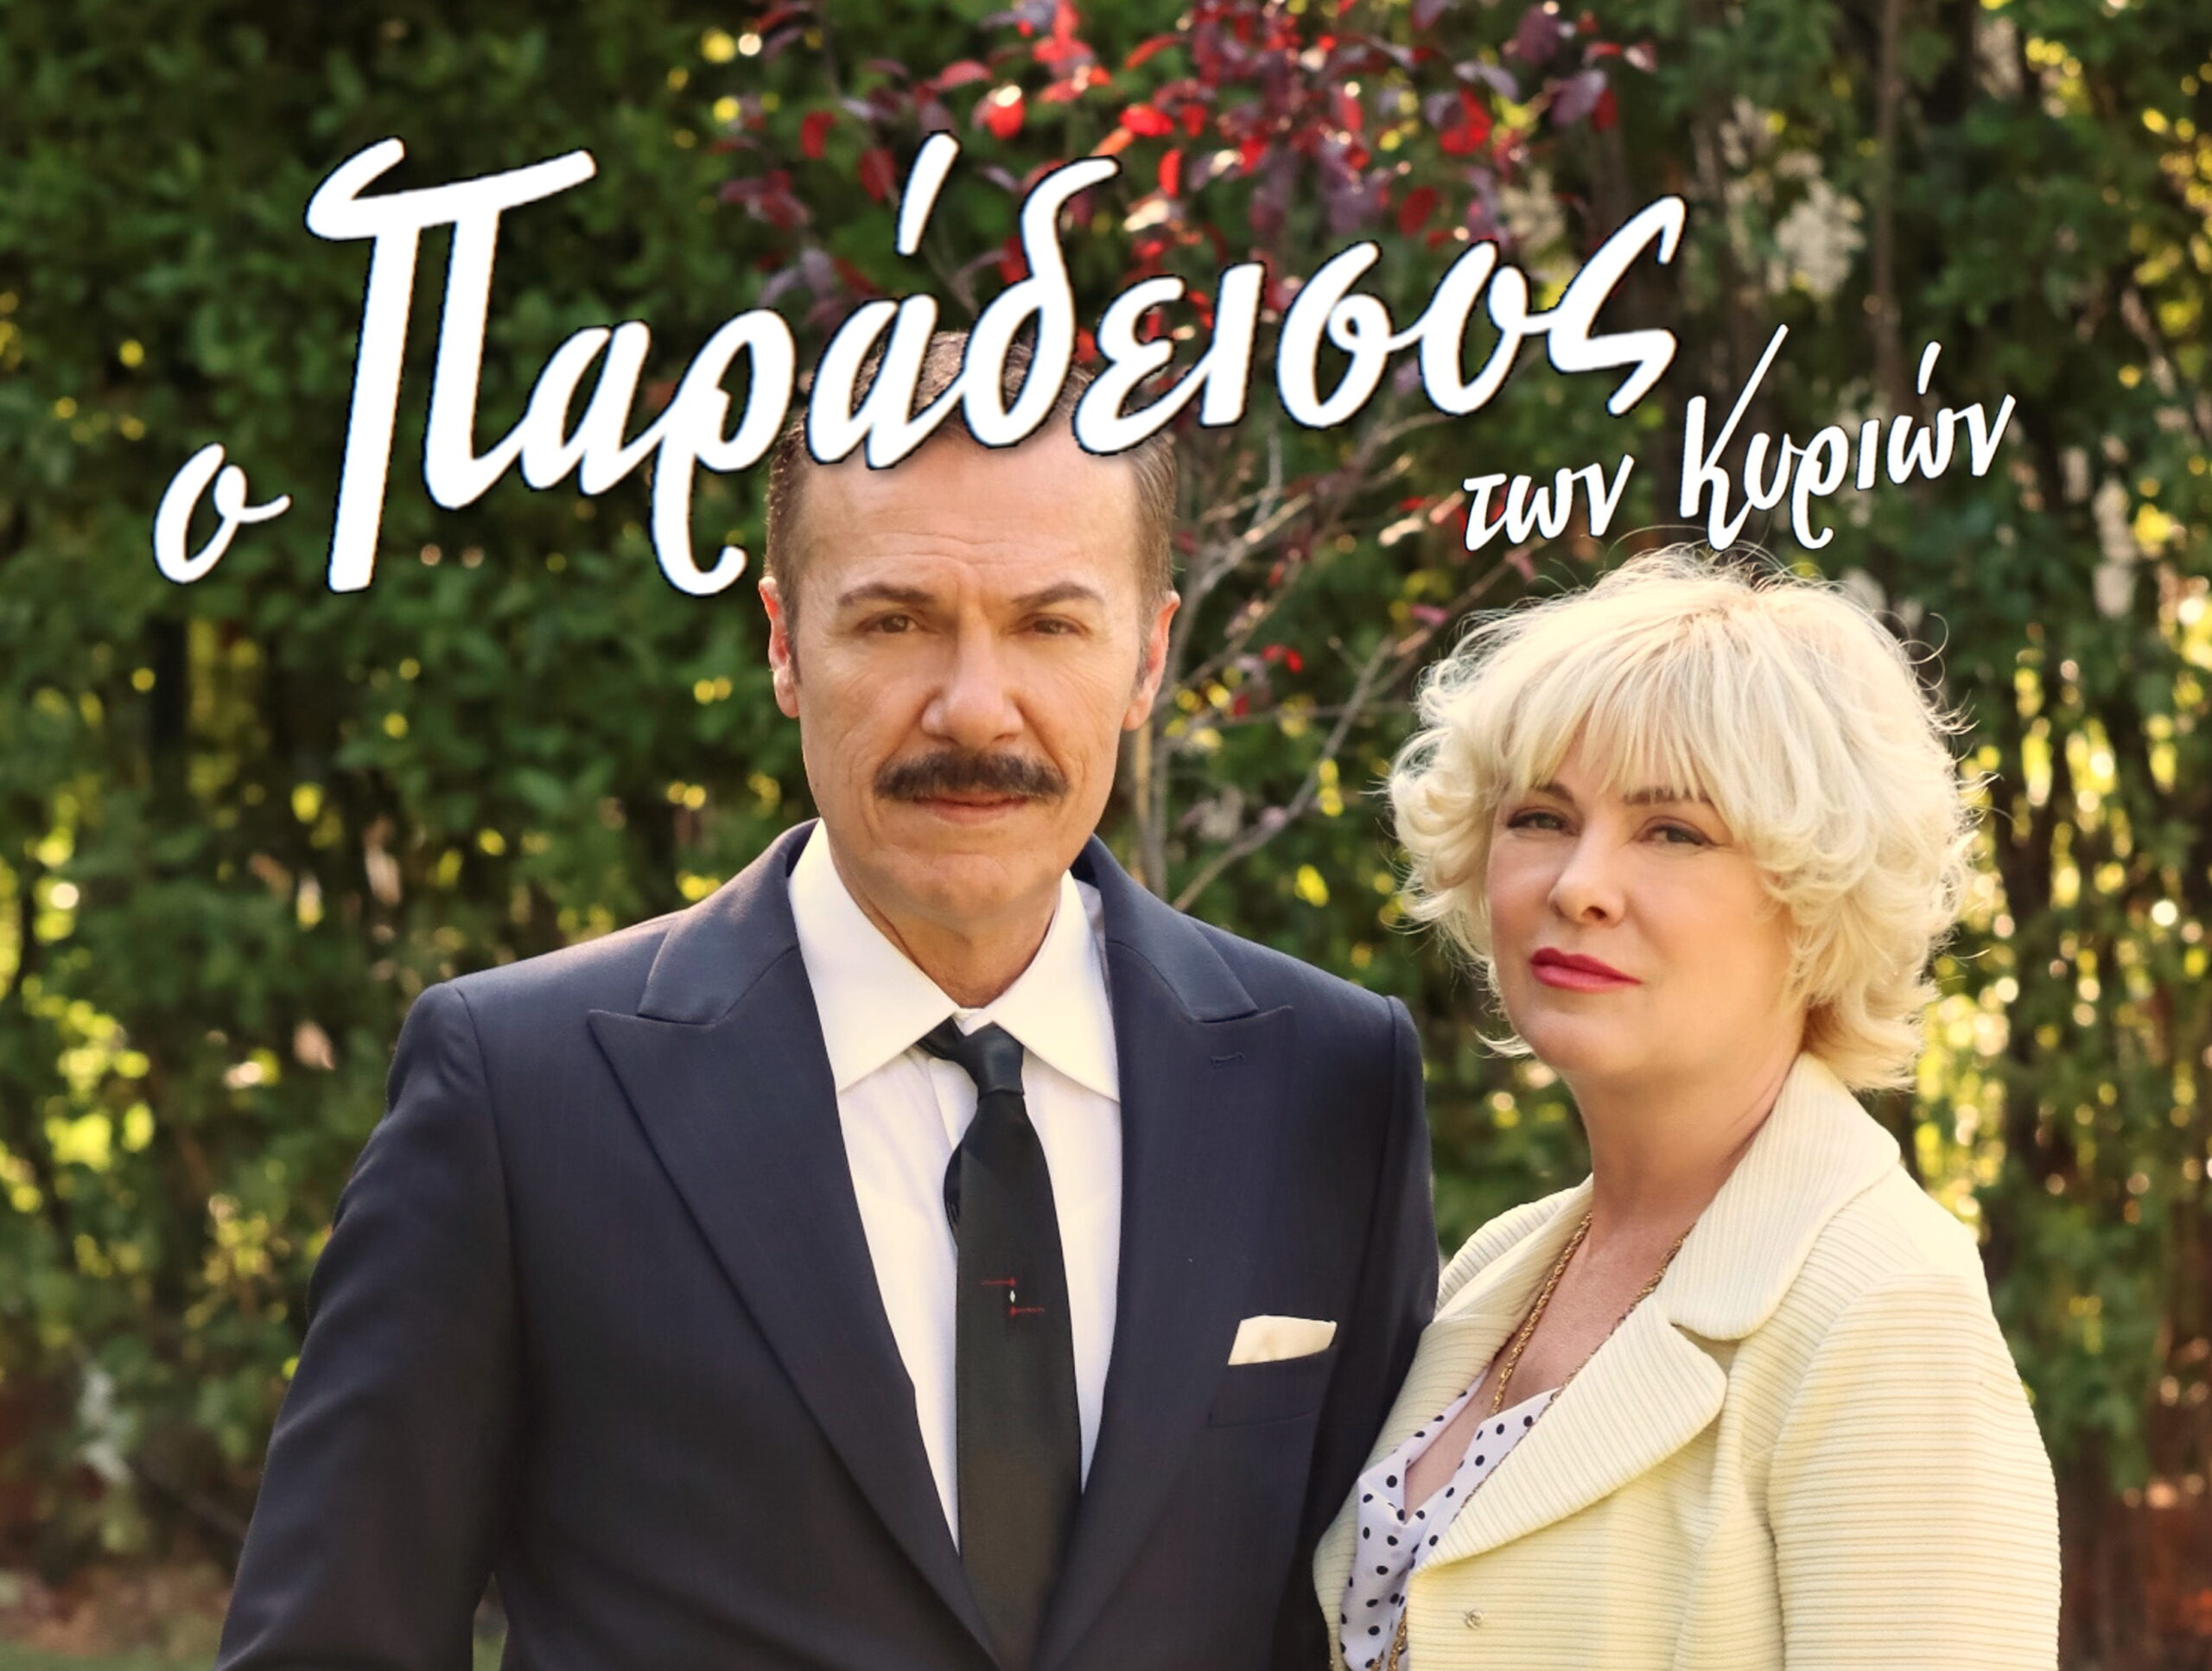 Ο Λάζαρος Γεωργακόπουλος για τον ρόλο του στον «Παράδεισο των κυριών»: «Προσπαθώ να τους καταστρέψω»